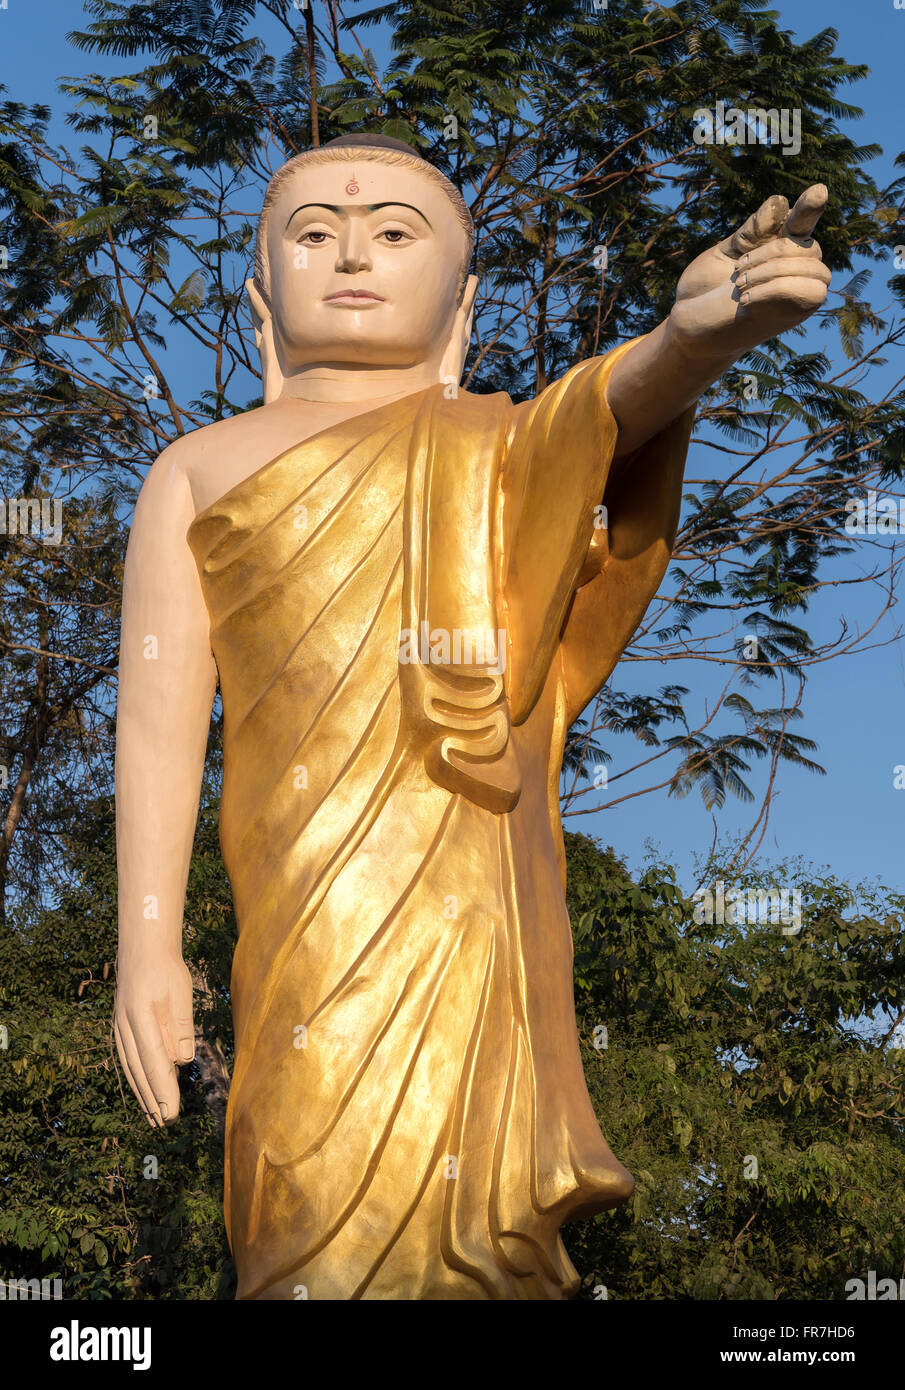 Estatua del Buda con brazo extendido y señalando con el dedo, Naung Daw Gyi Mya Tha Lyaung, Bago, Birmania (Myanmar) Foto de stock